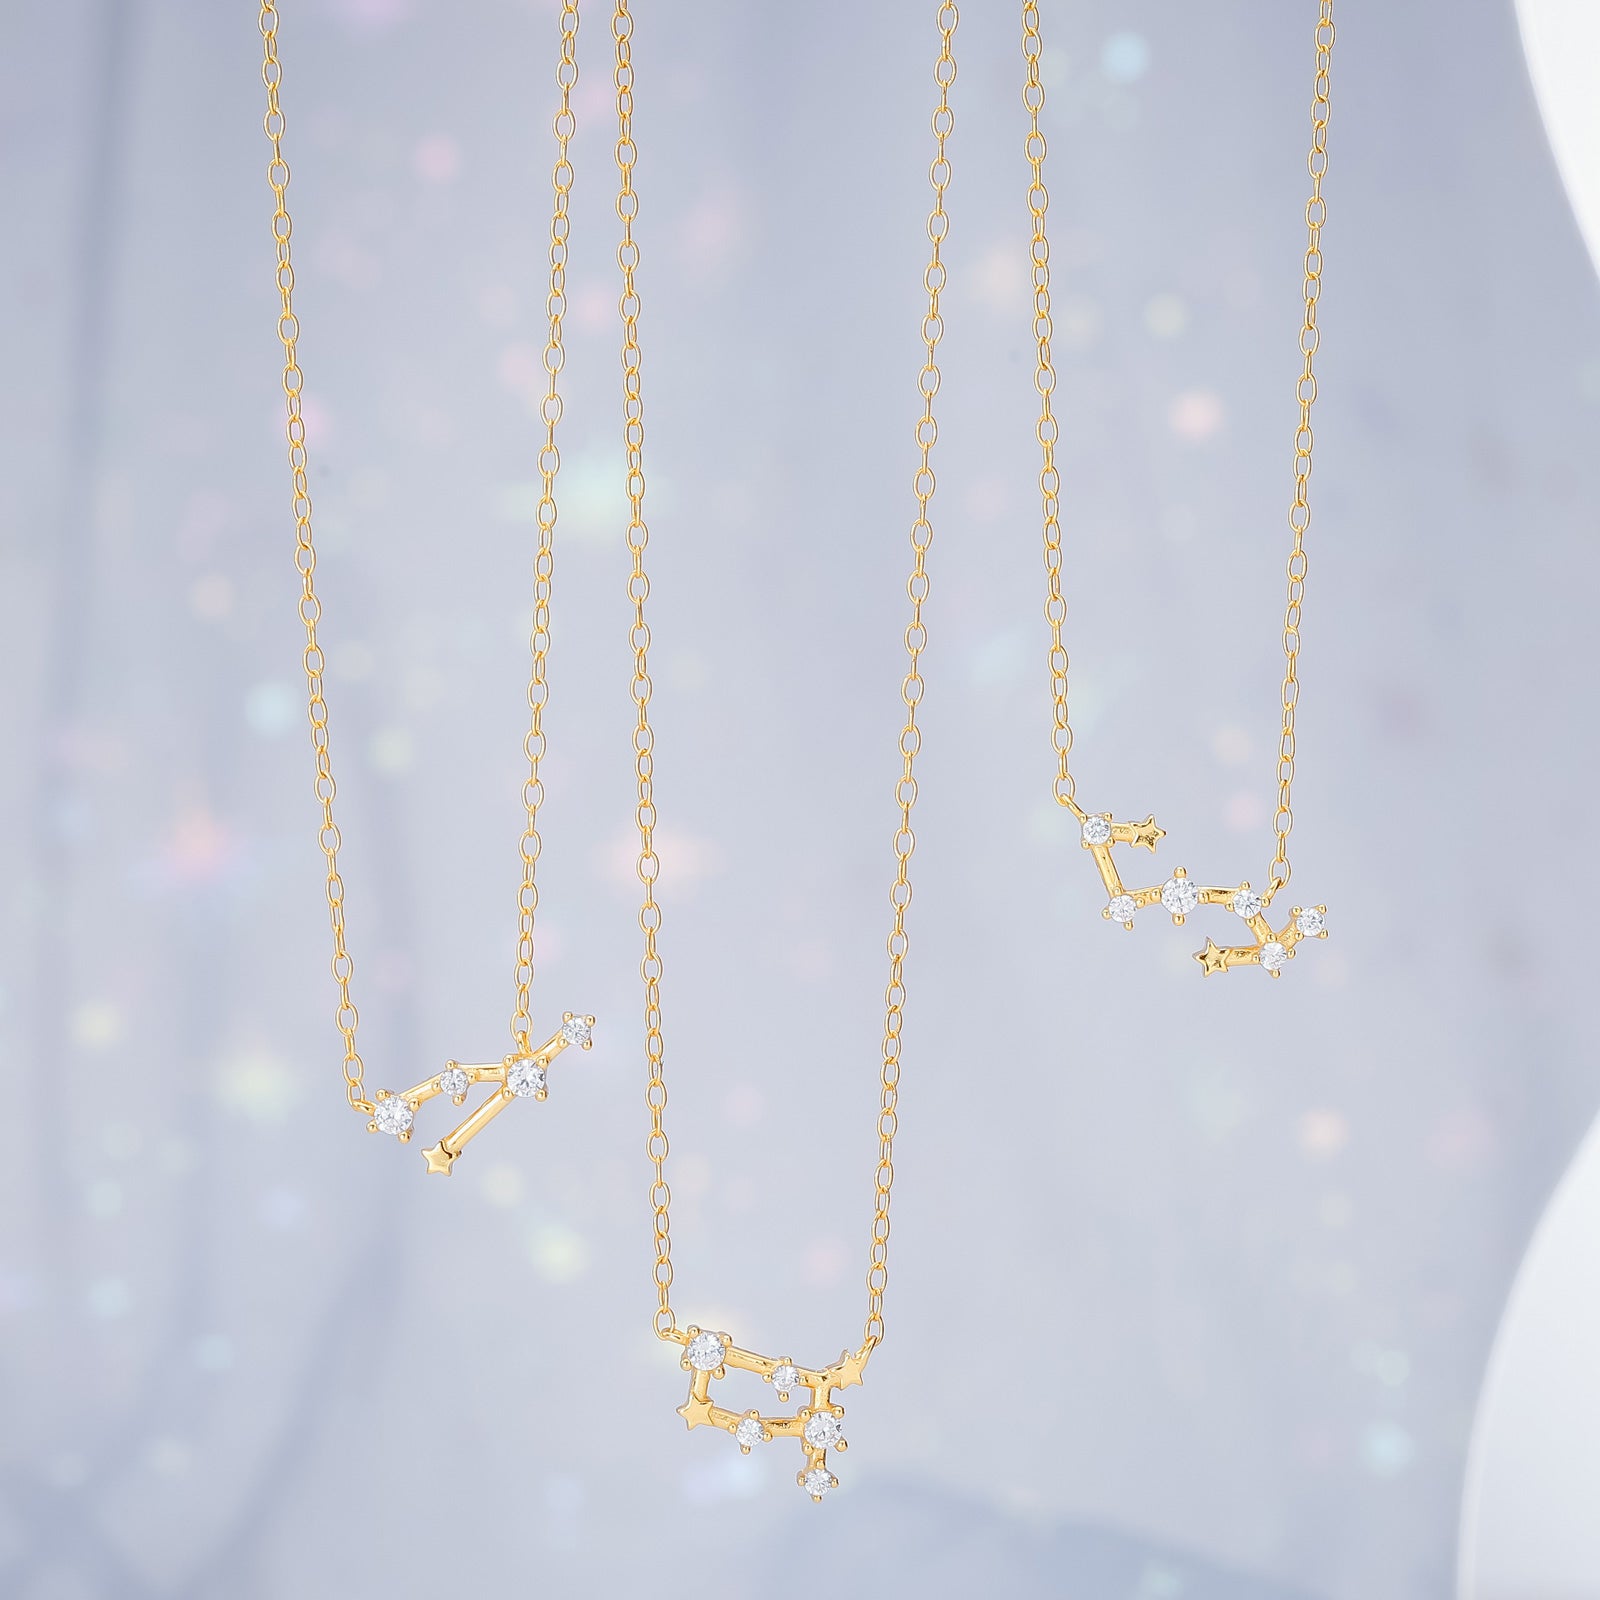 Gold Taurus Constellation Necklace